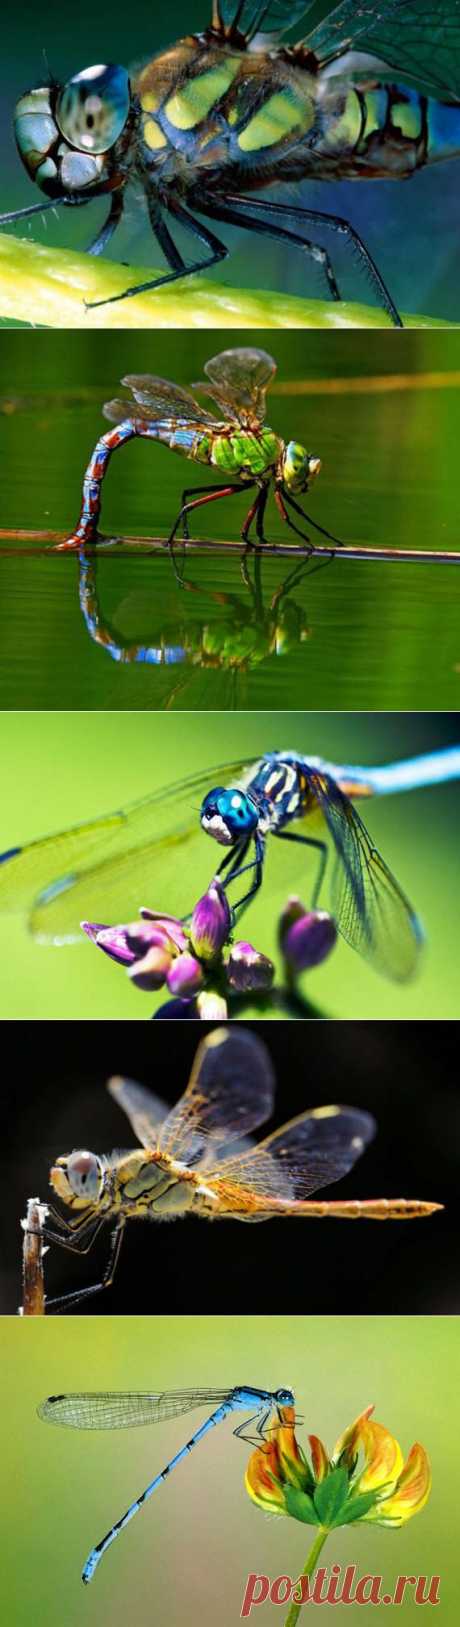 Красивые макро фотографии стрекоз и картинки со стрекозами